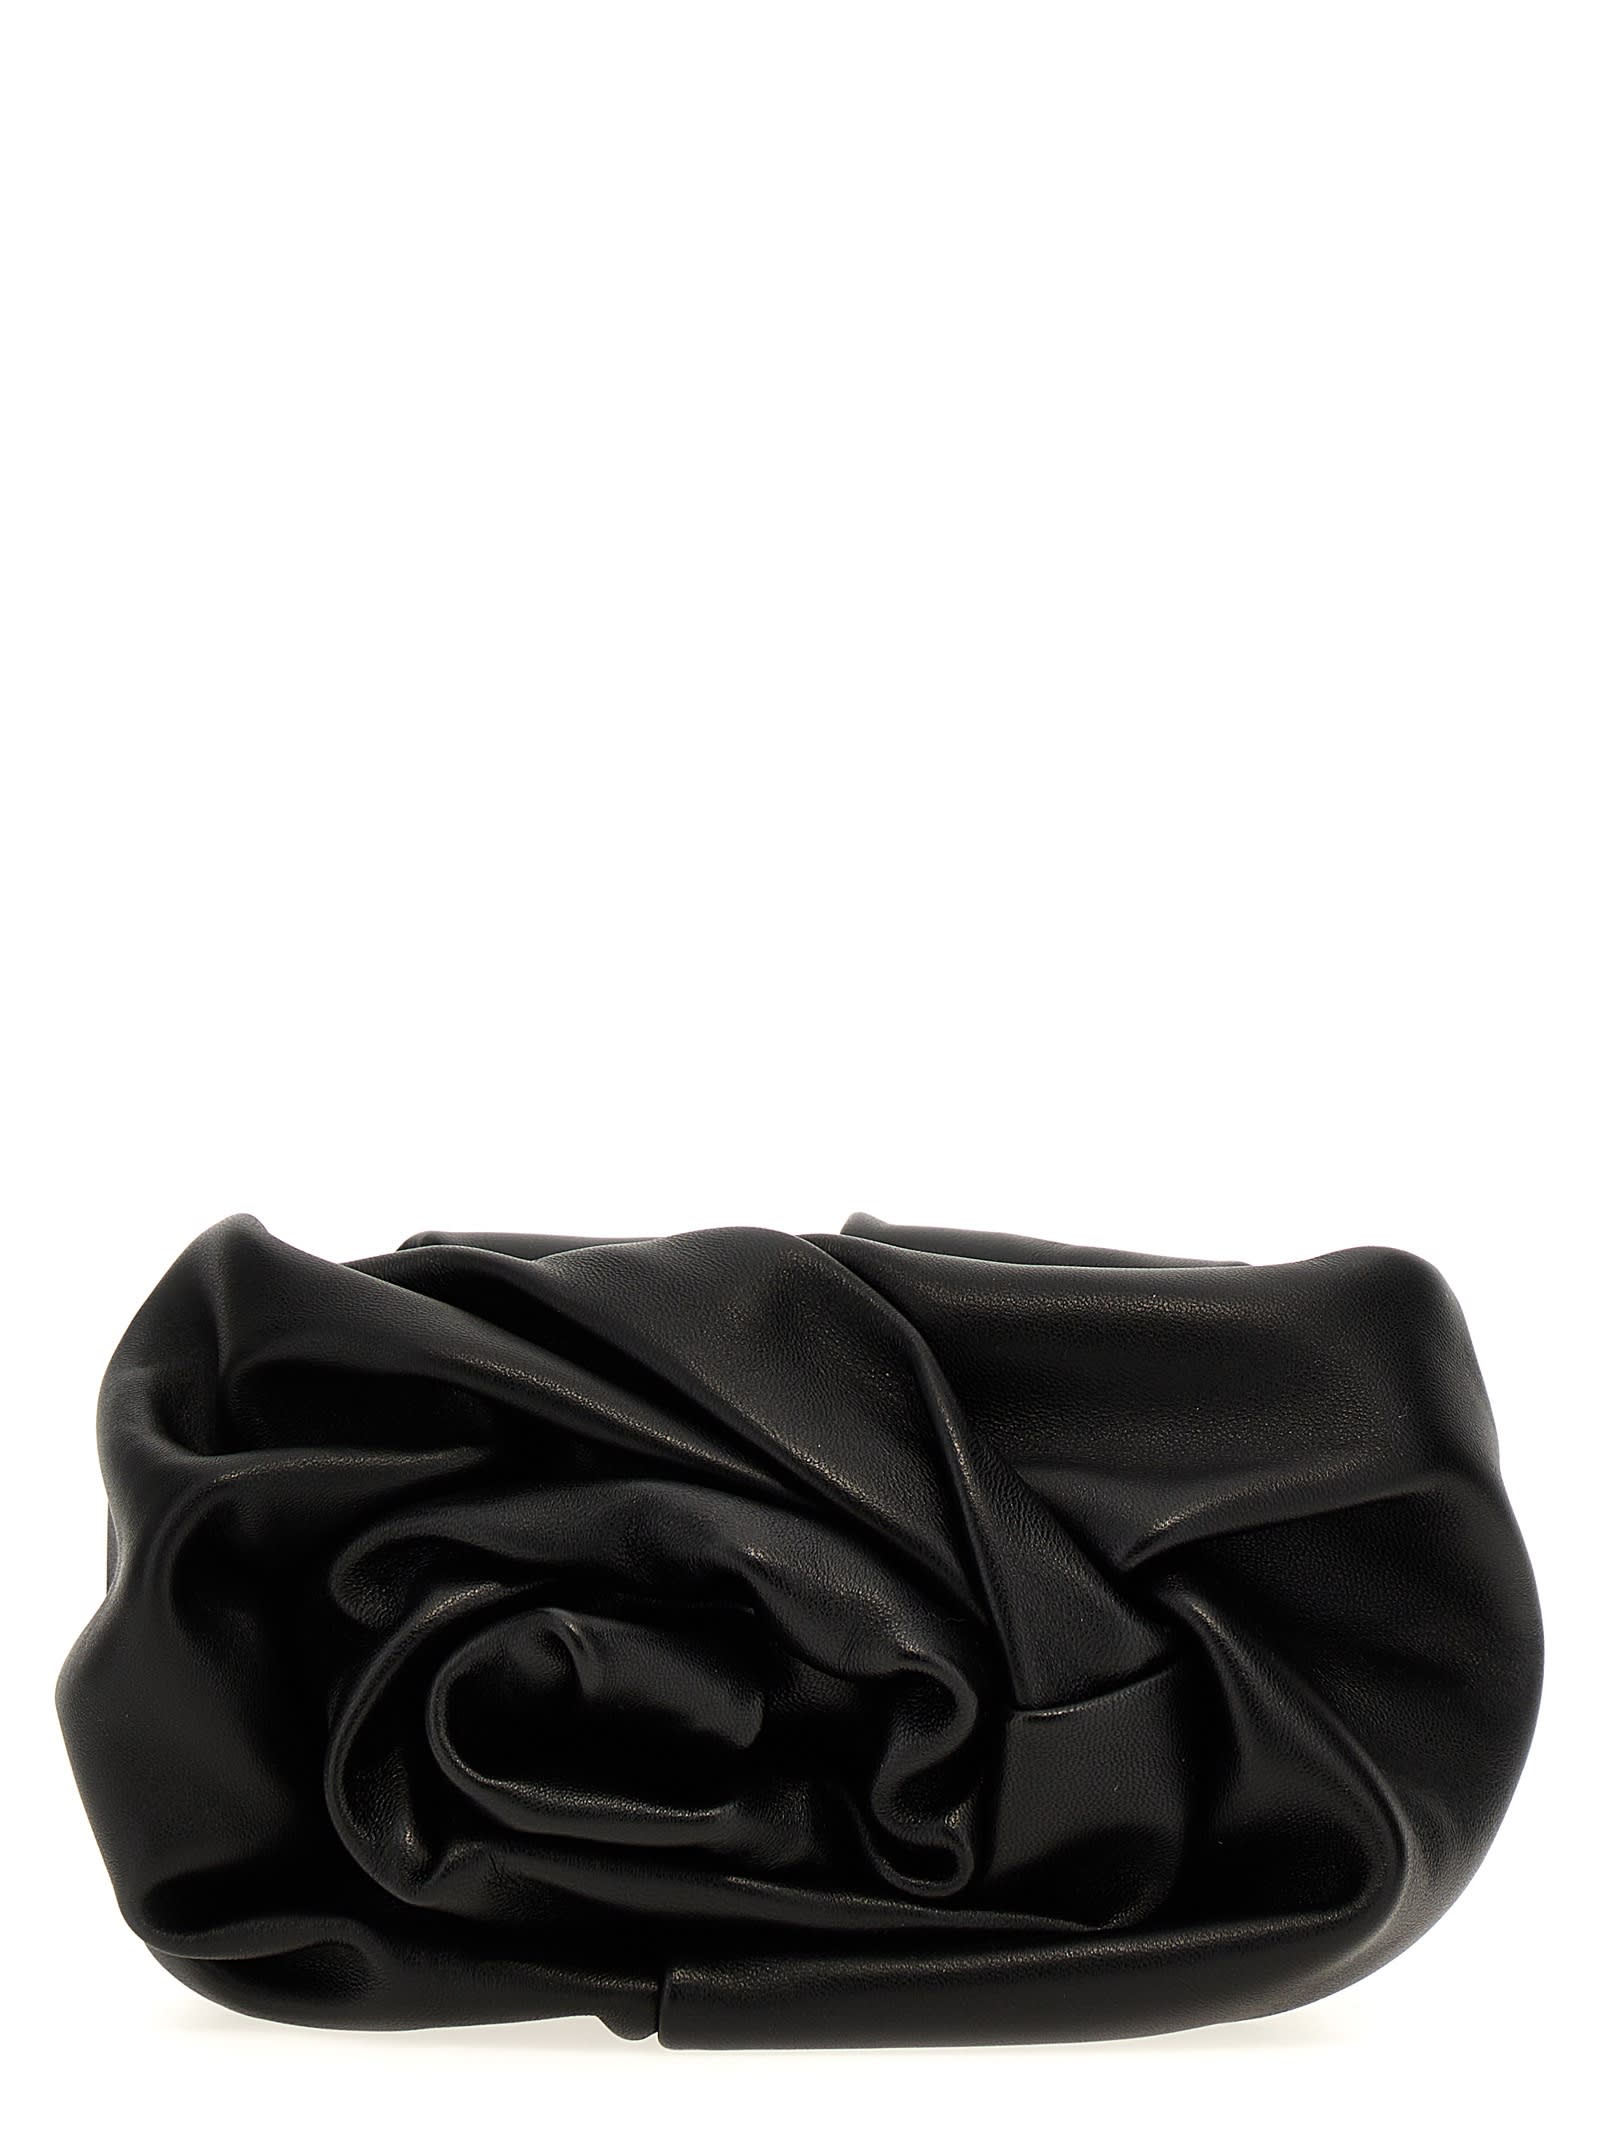 Burberry Rose Clutch In Black